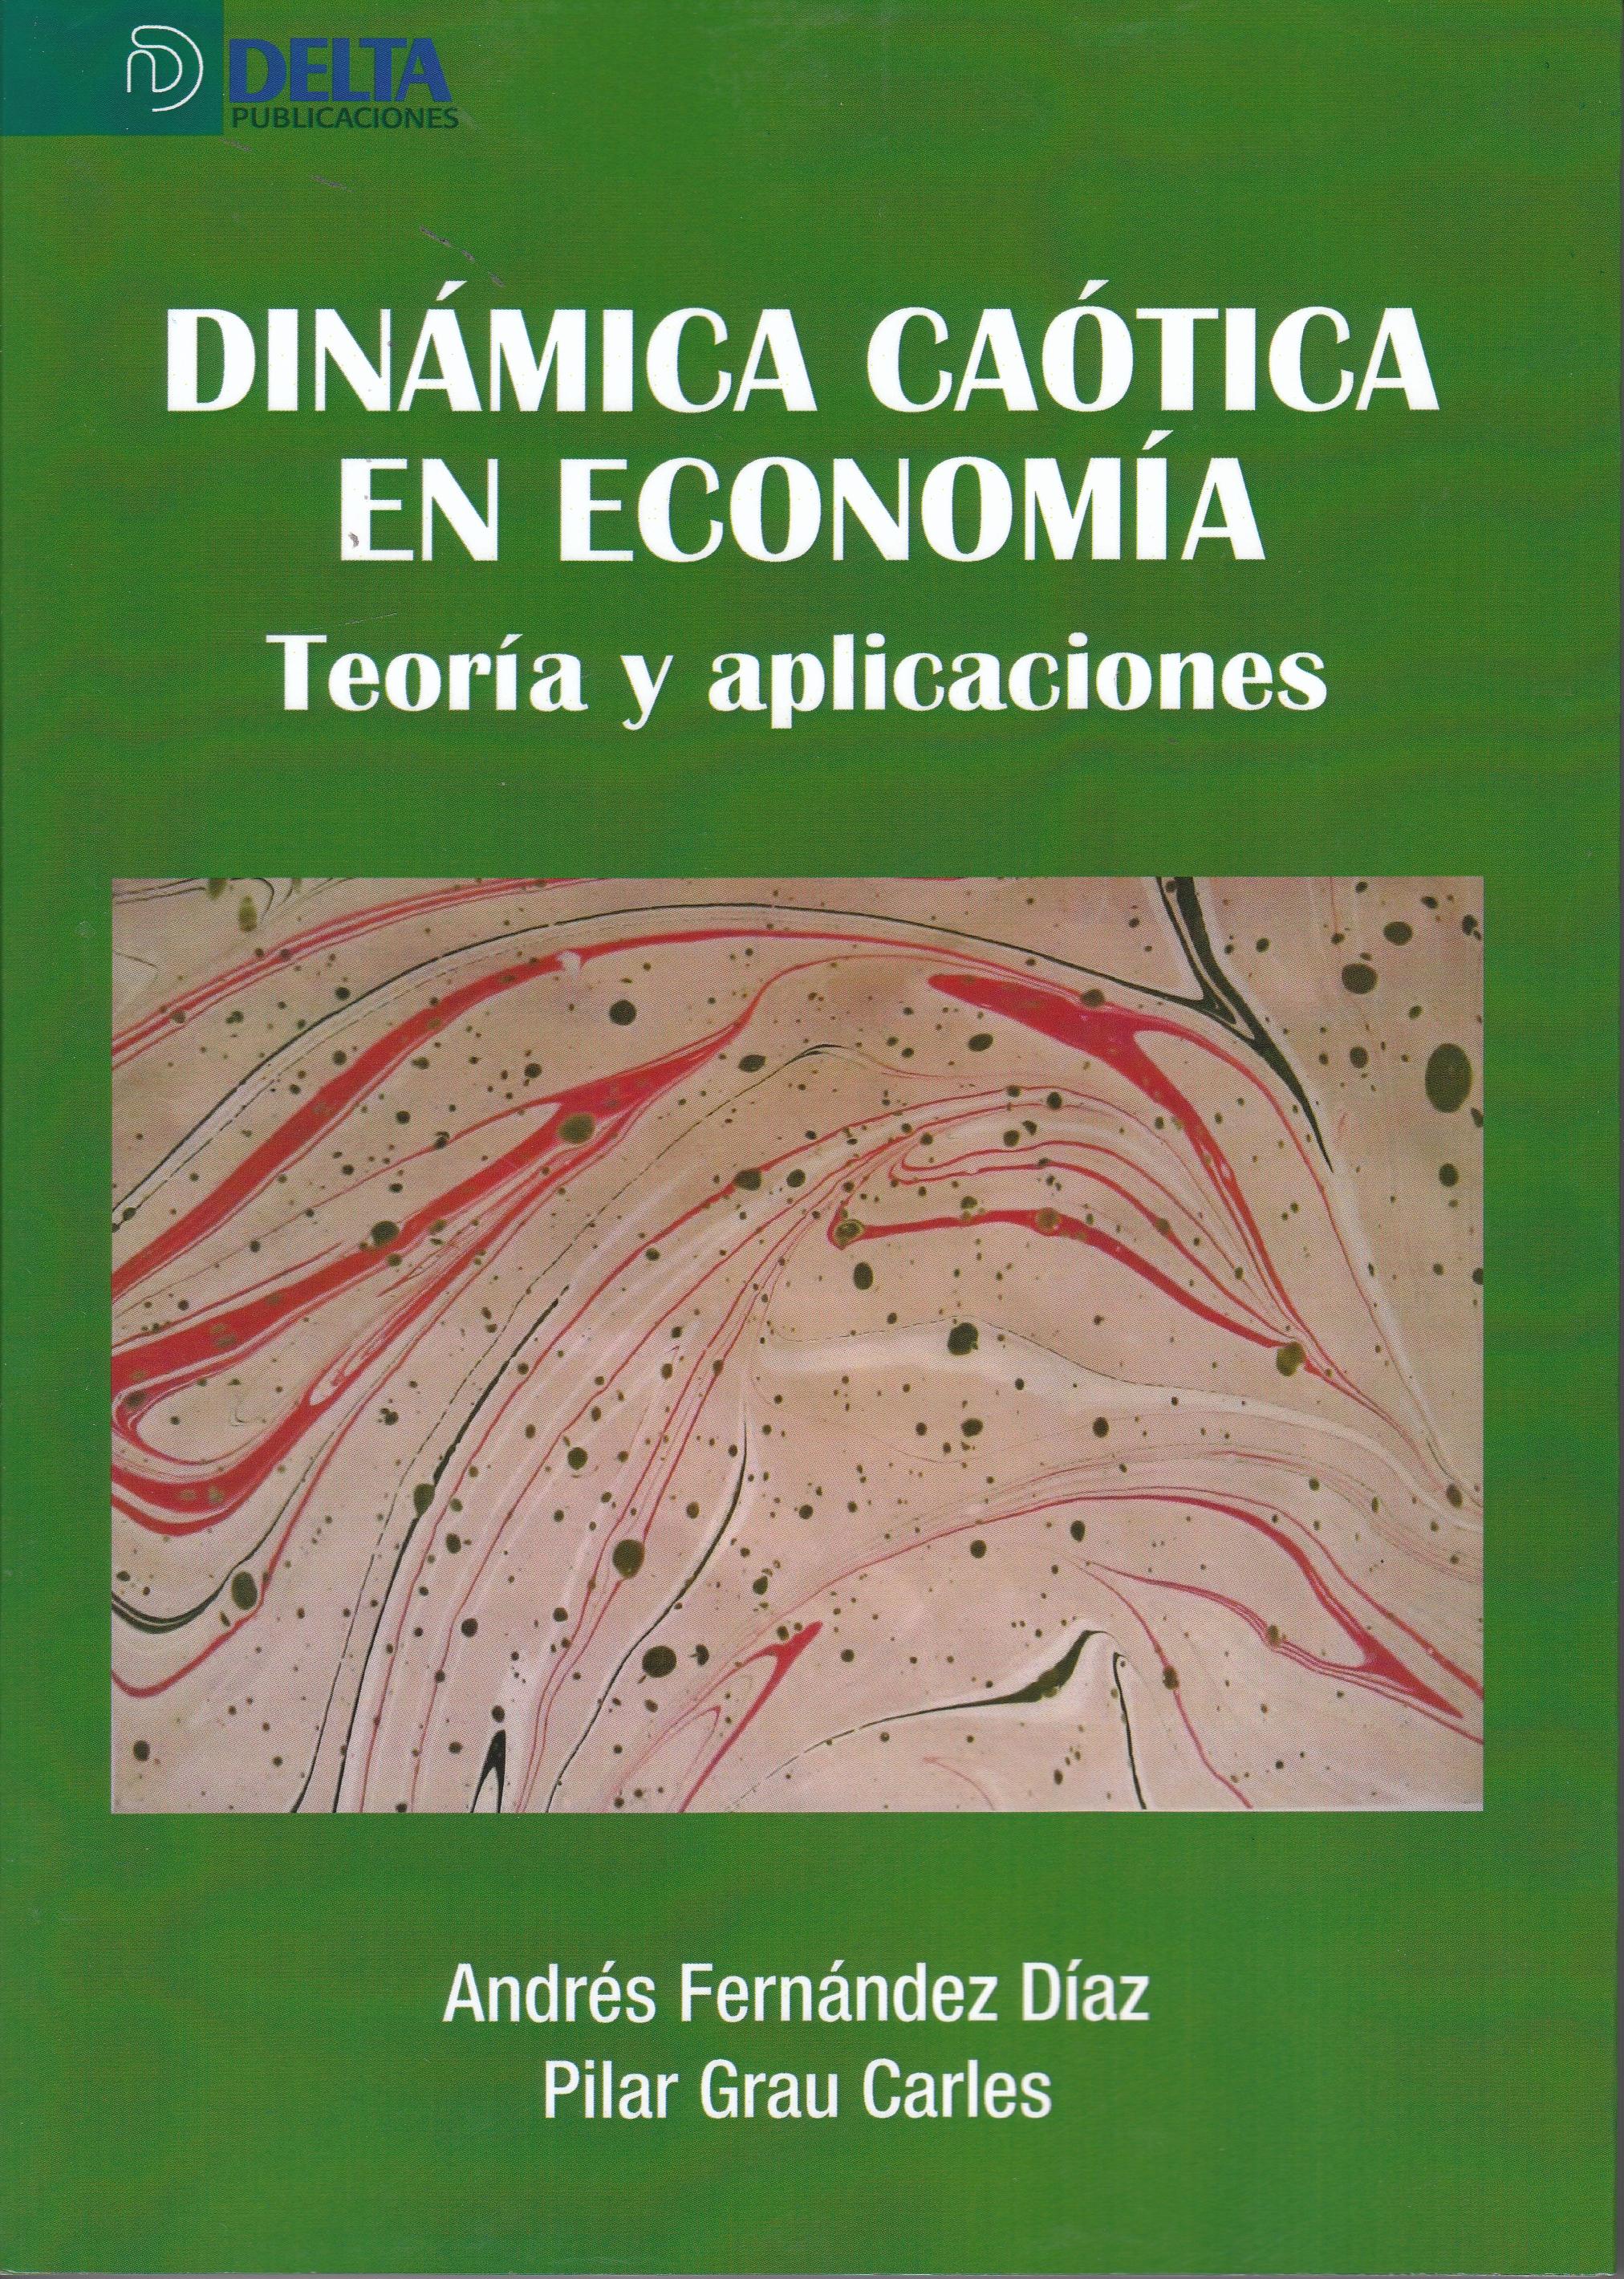 Dinámica caótica en economía "Teoría y aplicaciones"